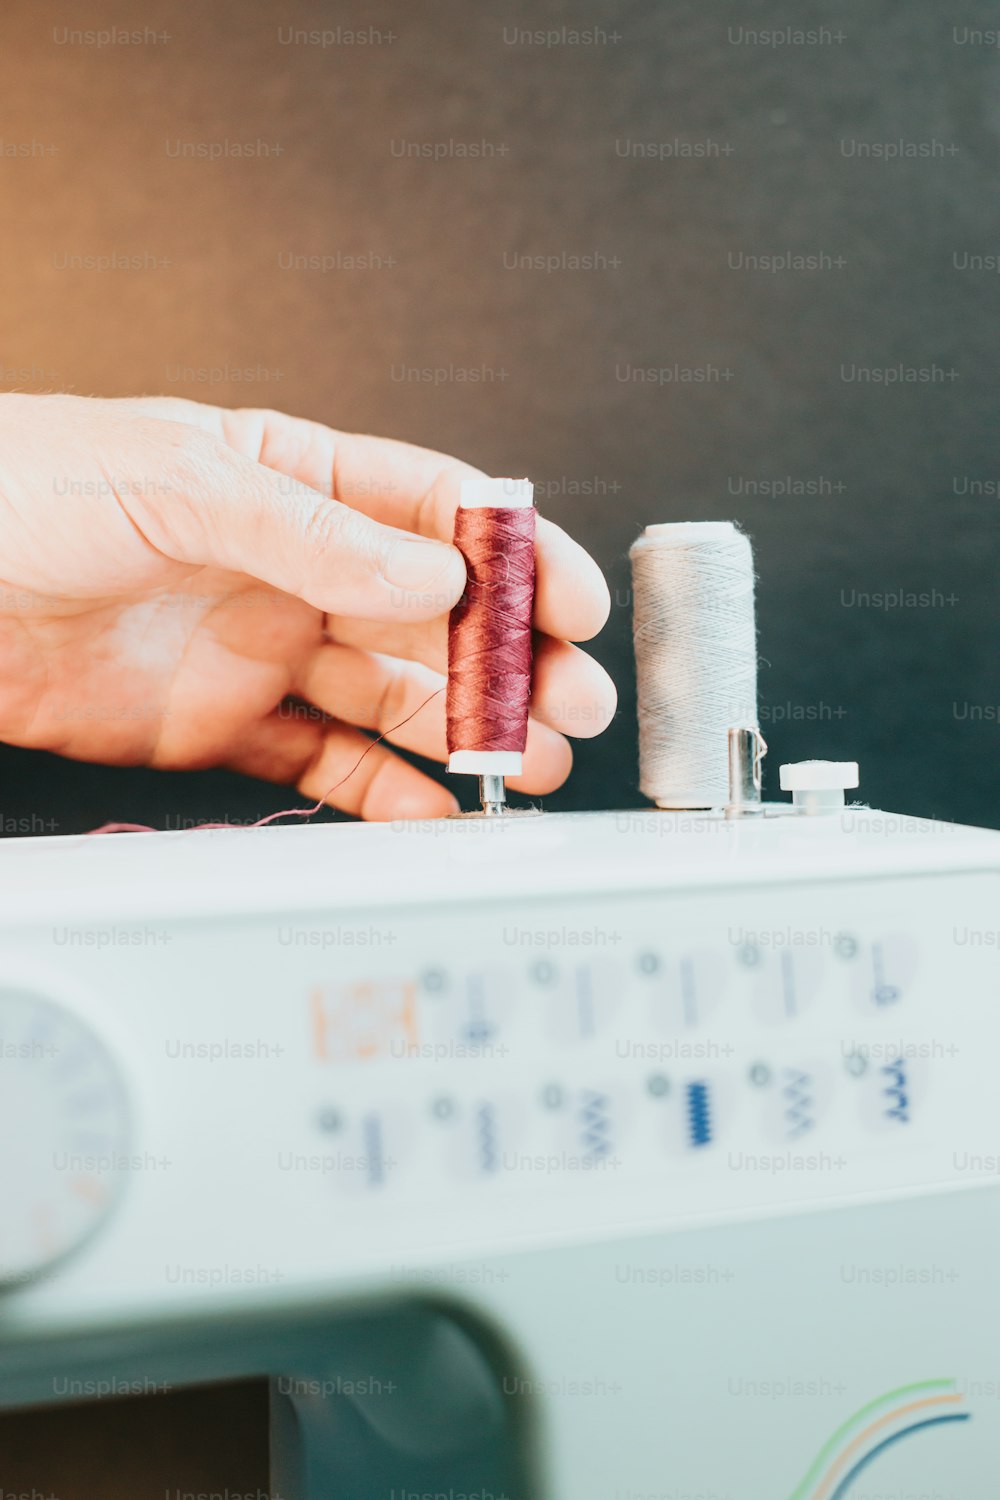 uma pessoa está costurando um pedaço de tecido em uma máquina de costura